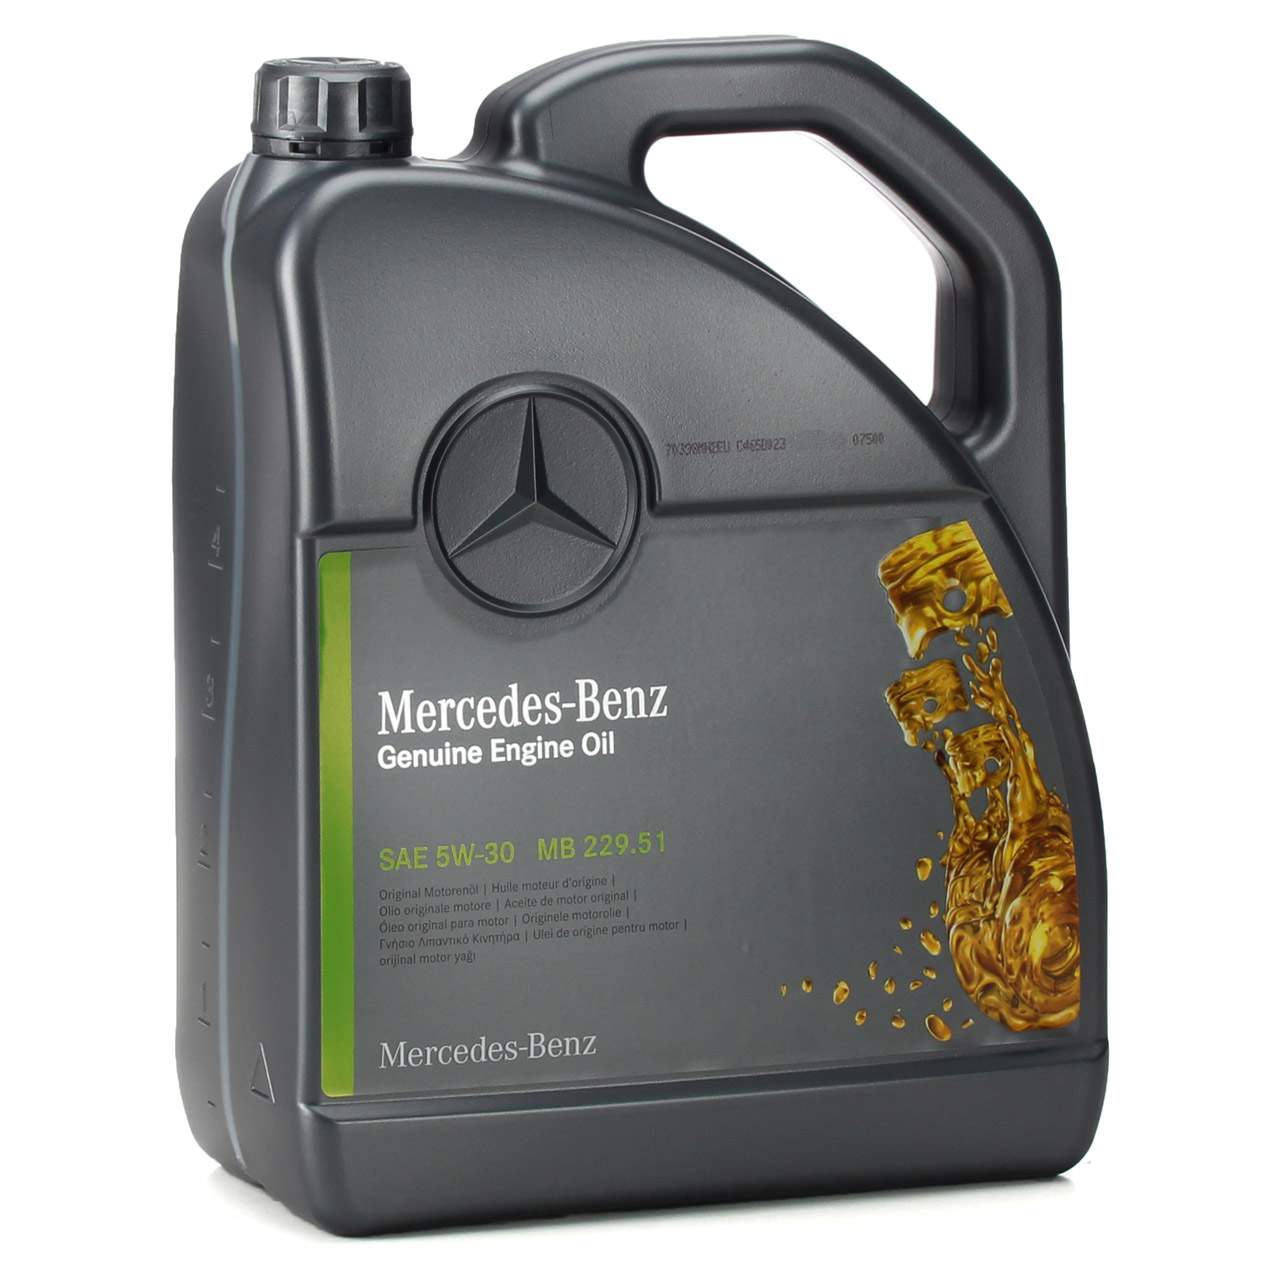 Olio motore Mercedes-benz 5w30 MB 229.51 (confezione da 5 litri)